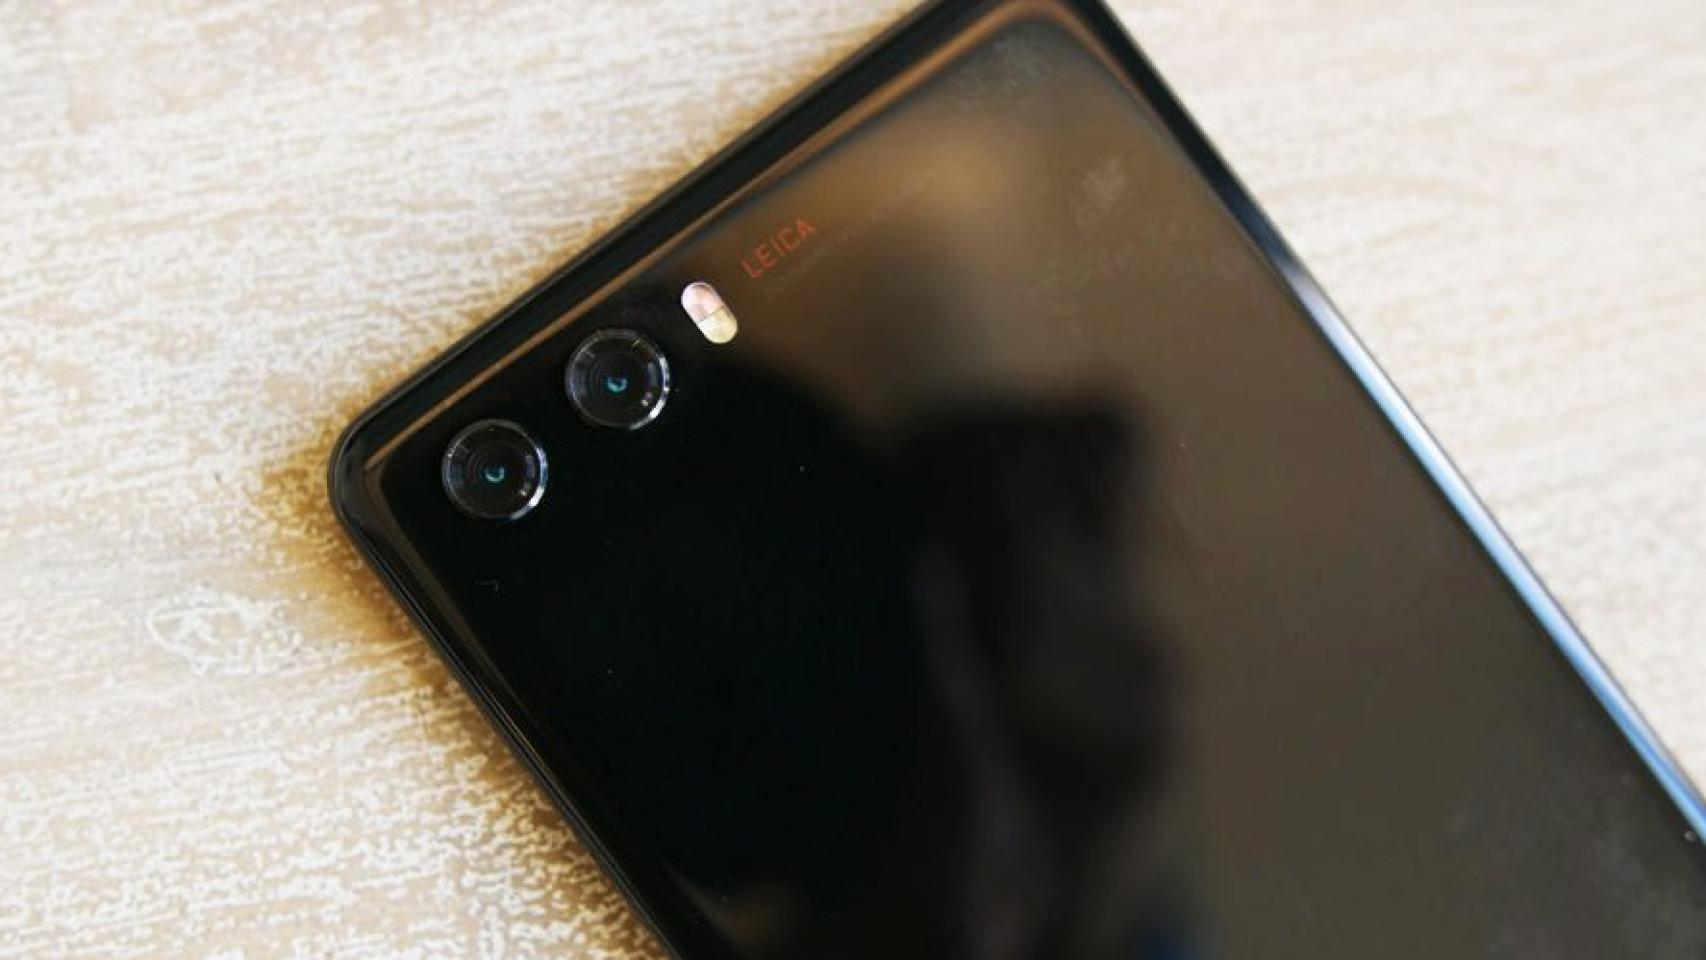 El Huawei P20 se muestra en fotos reales sin triple cámara ni botones de volumen